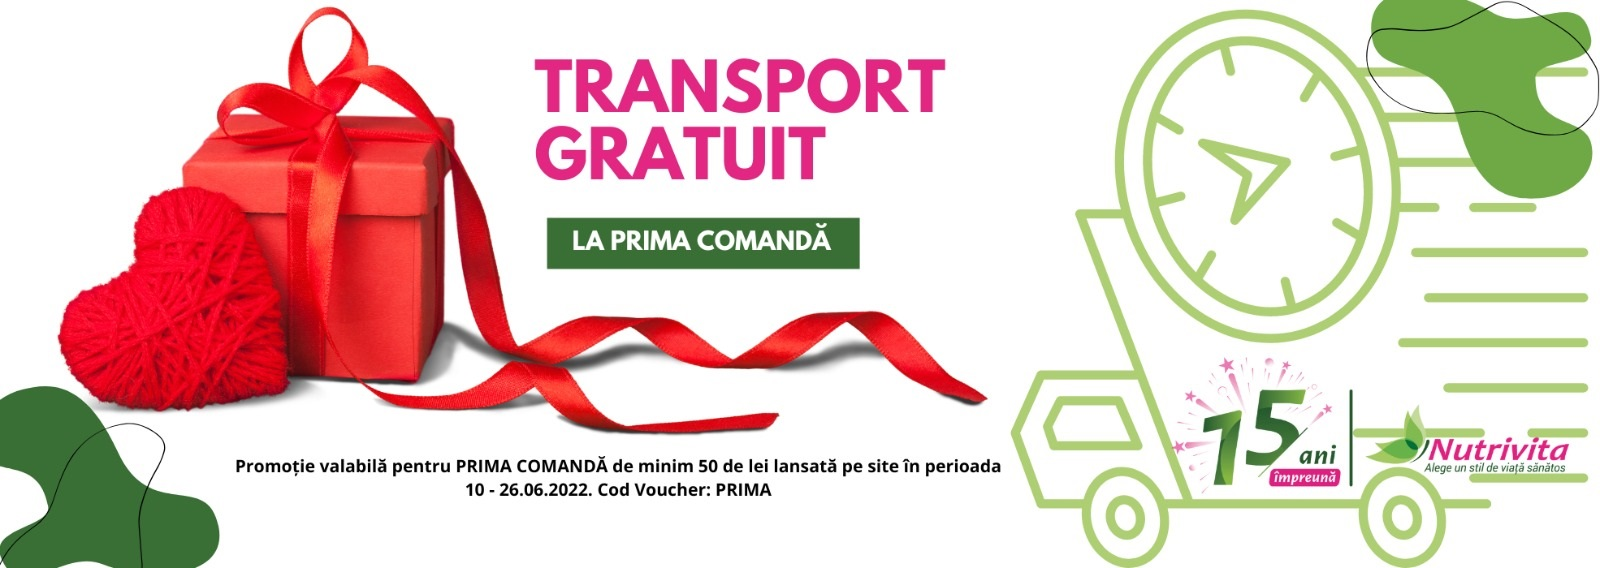 TRANSPORT GRATUIT LA PRIMA COMANDA